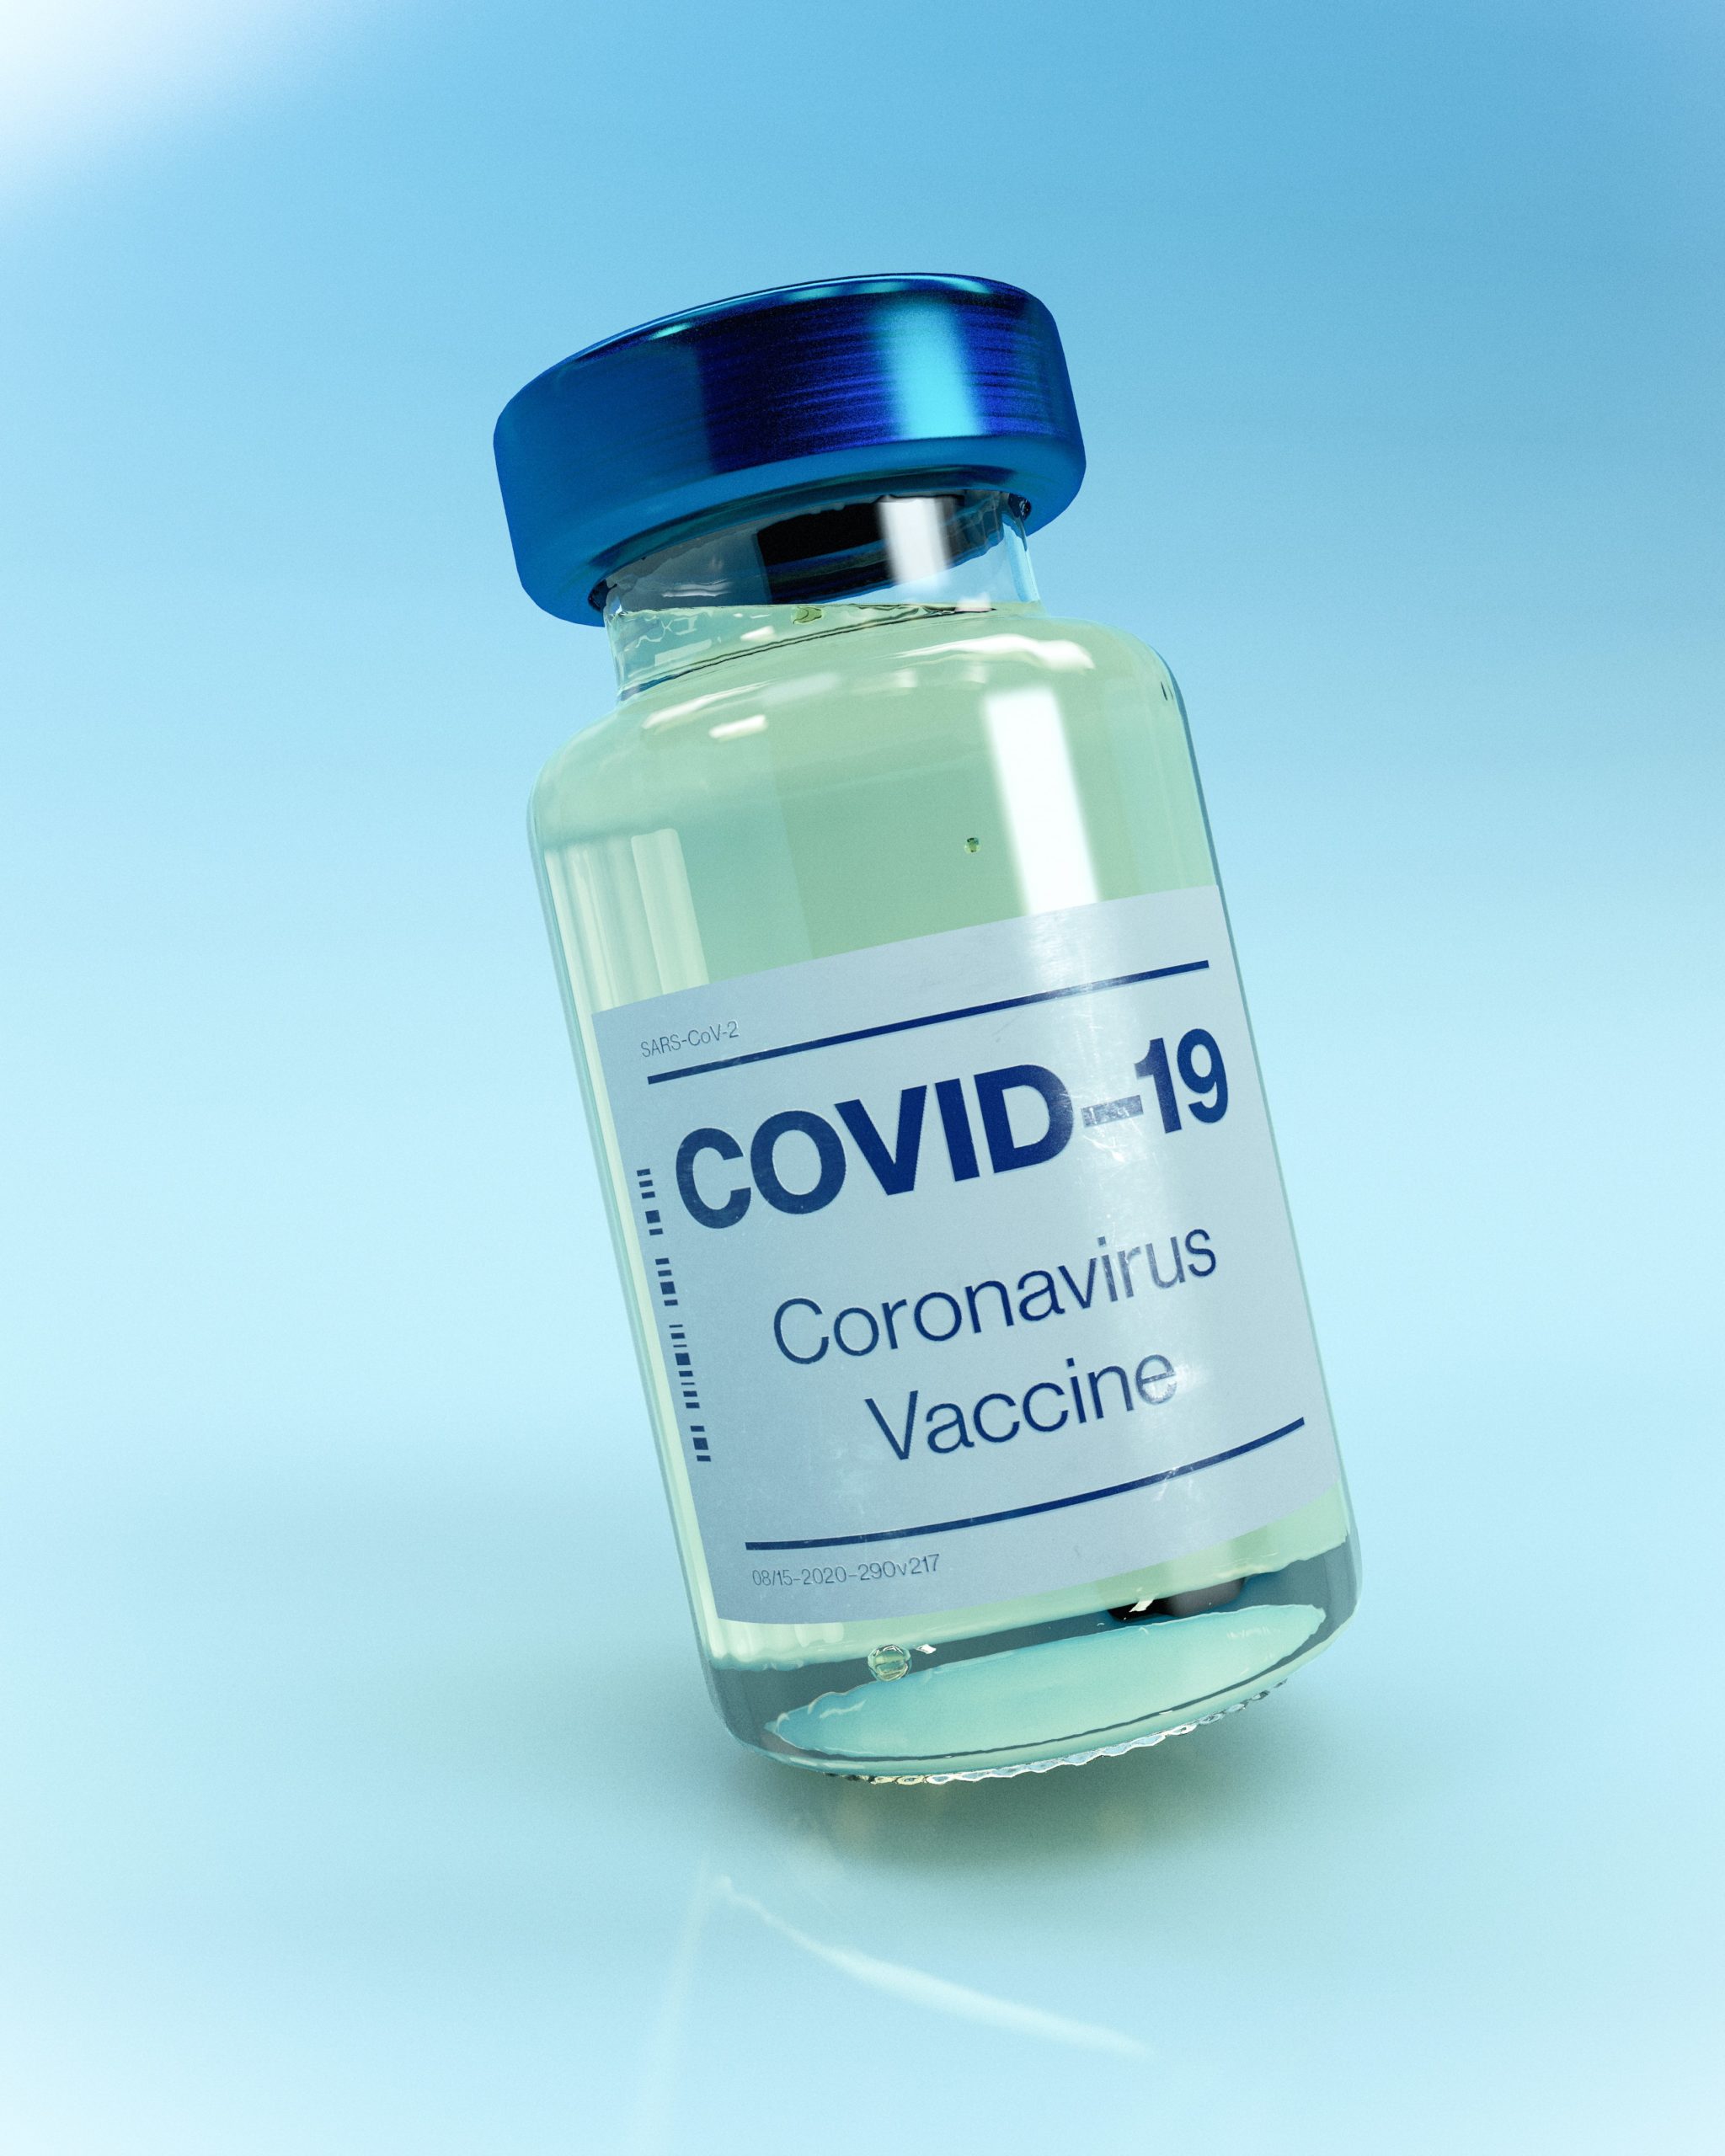 Pandemic Preparedness & Covid-19 Vaccination